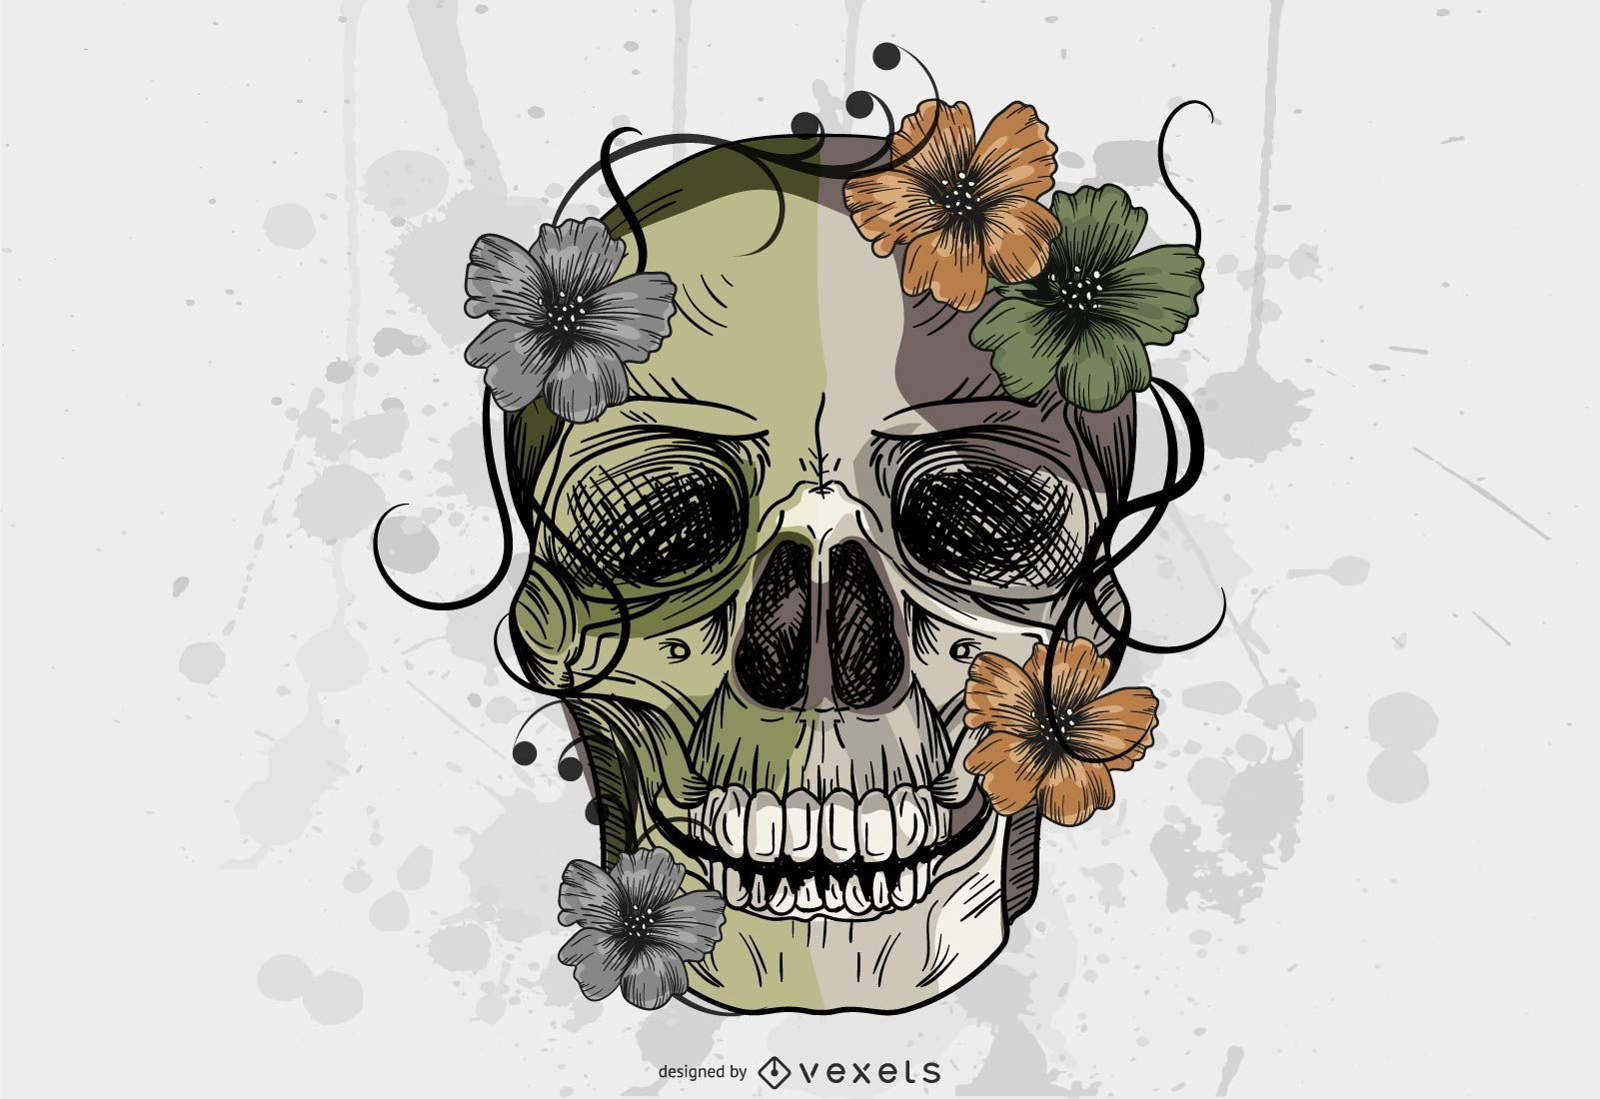 Grungy style skull illustration